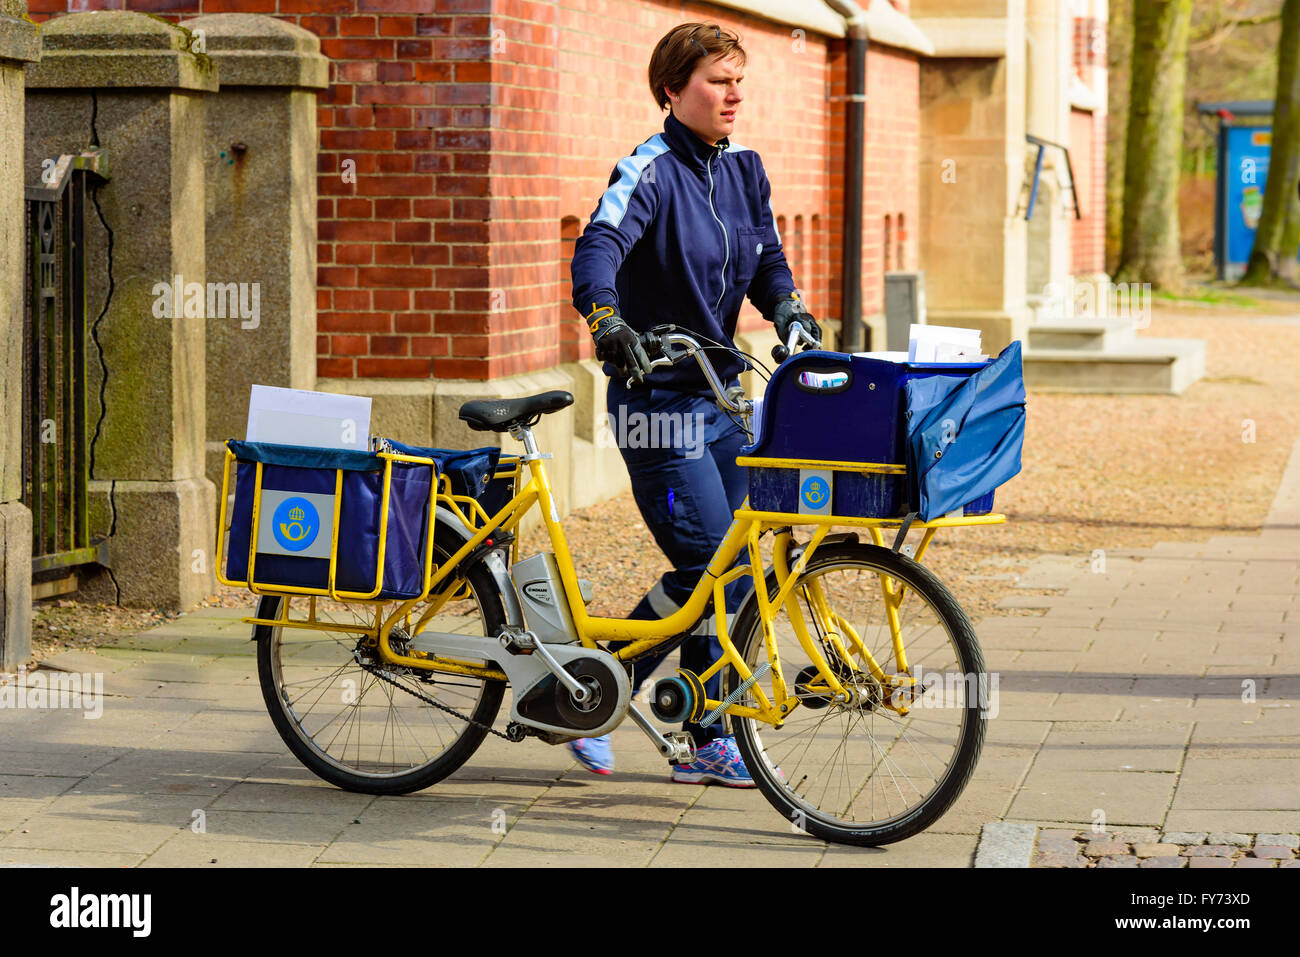 Trelleborg, Suecia . Abril 12, 2016: mujer cartero empujando una bicicleta llena de correo y cartas en el pavimento. Foto de stock